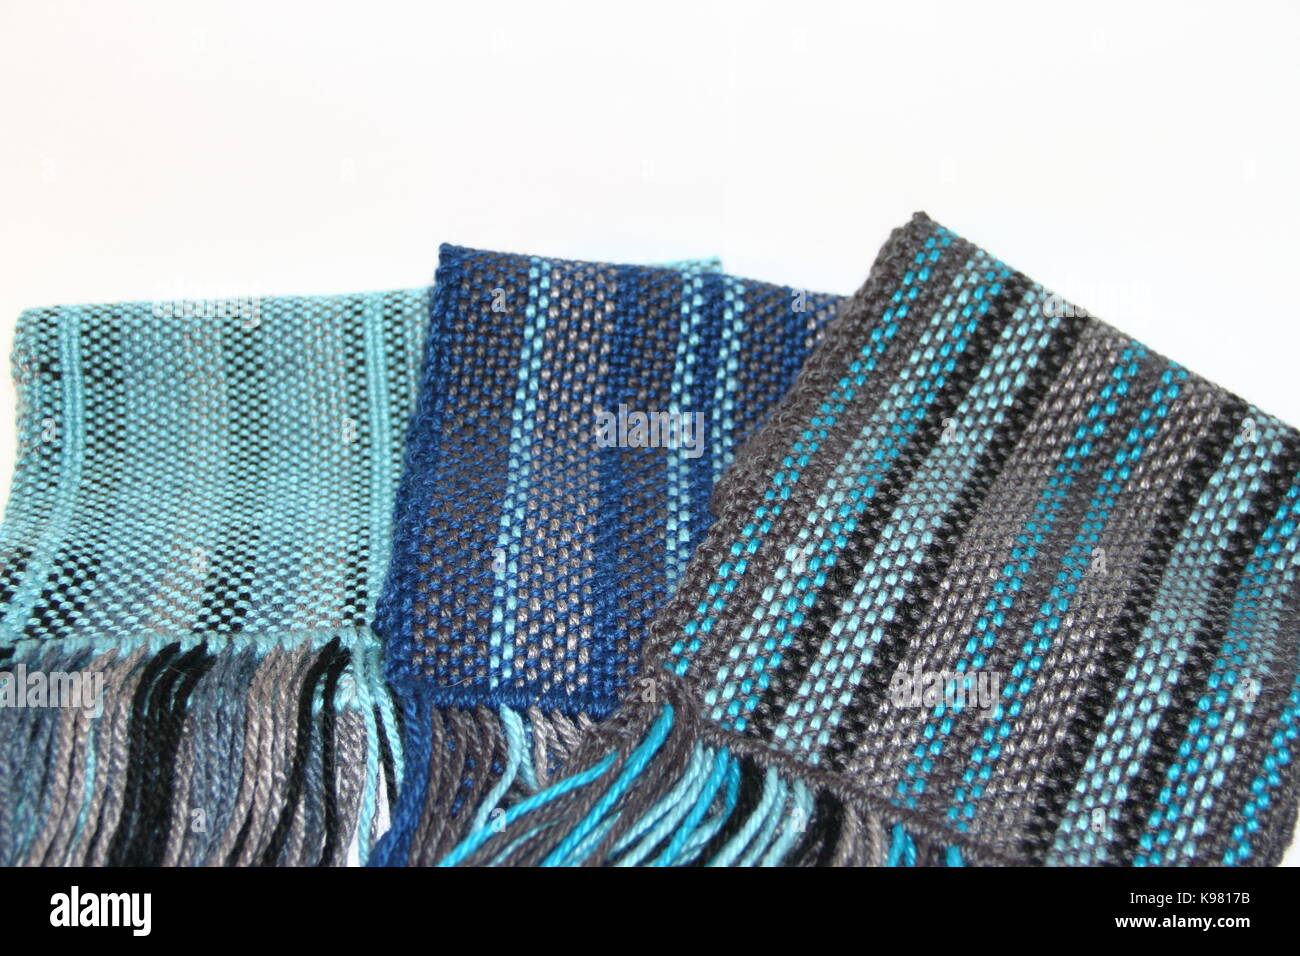 Telares, racores, bufandas tejidas a telar, hilos de colores fondos blancos  Fotografía de stock - Alamy